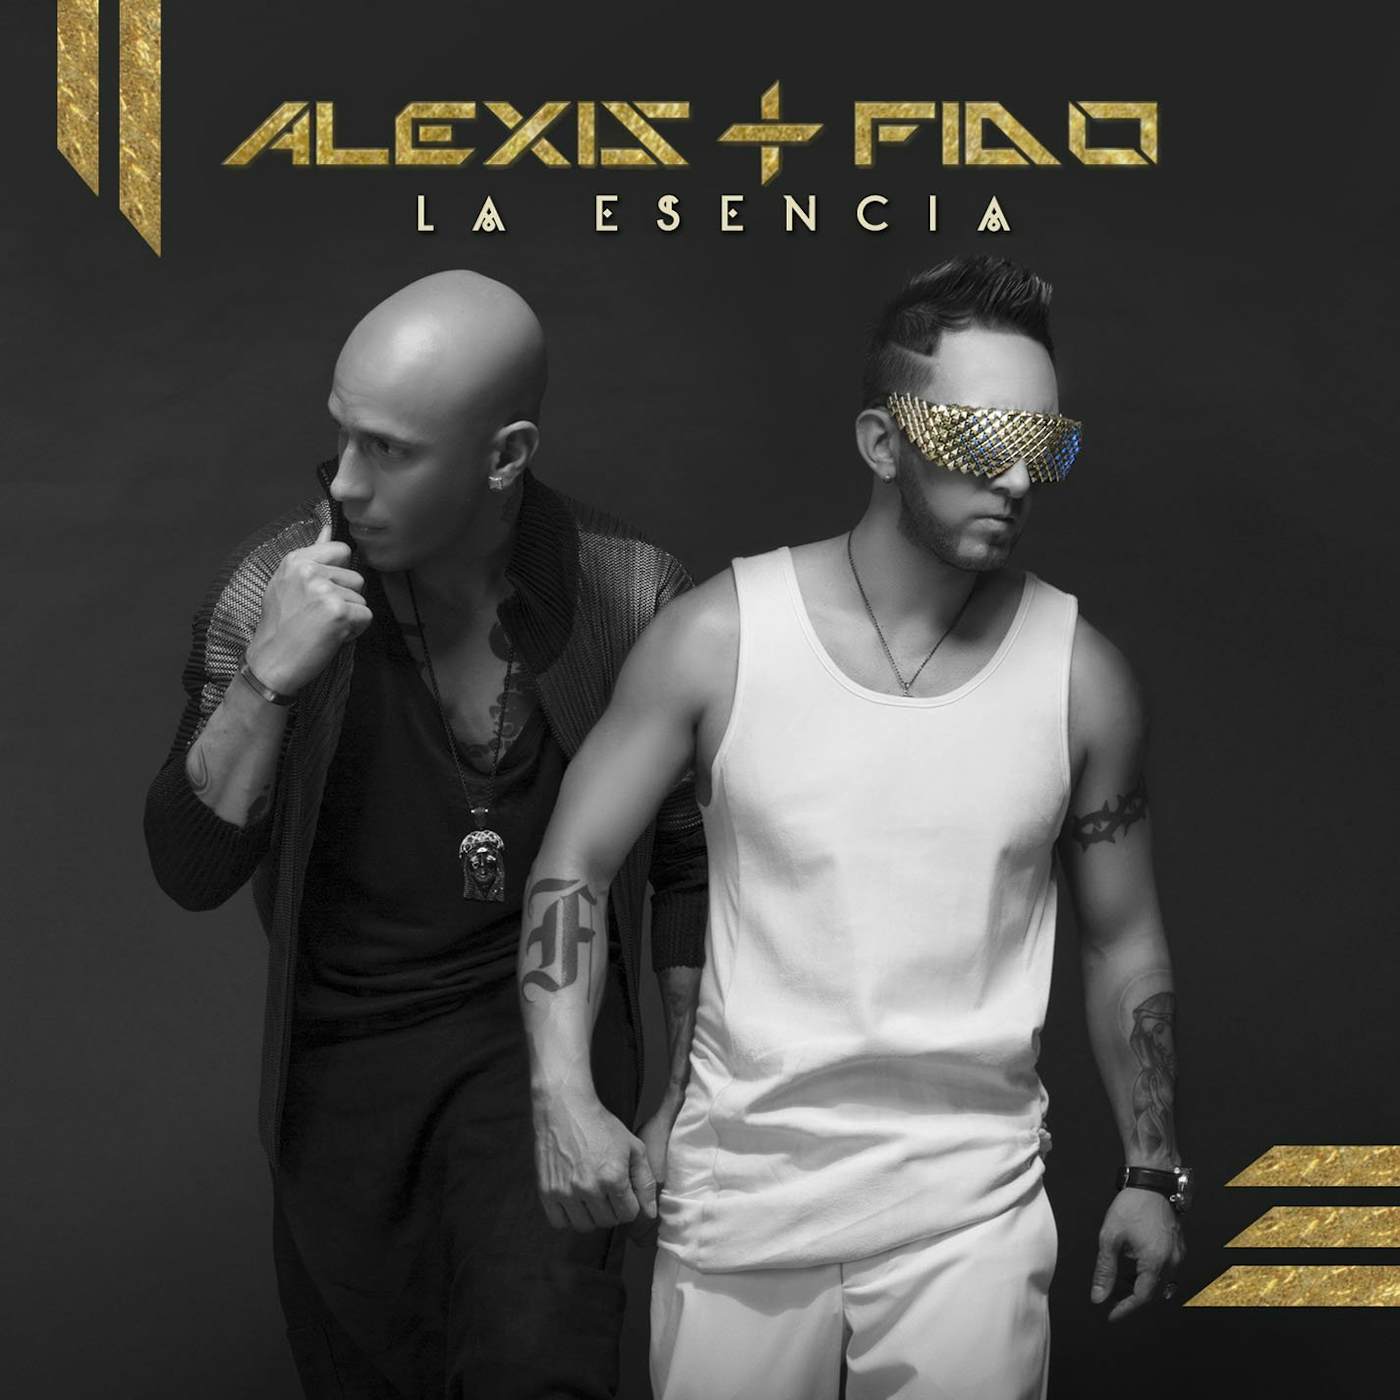 Alexis & Fido ESENCIA CD